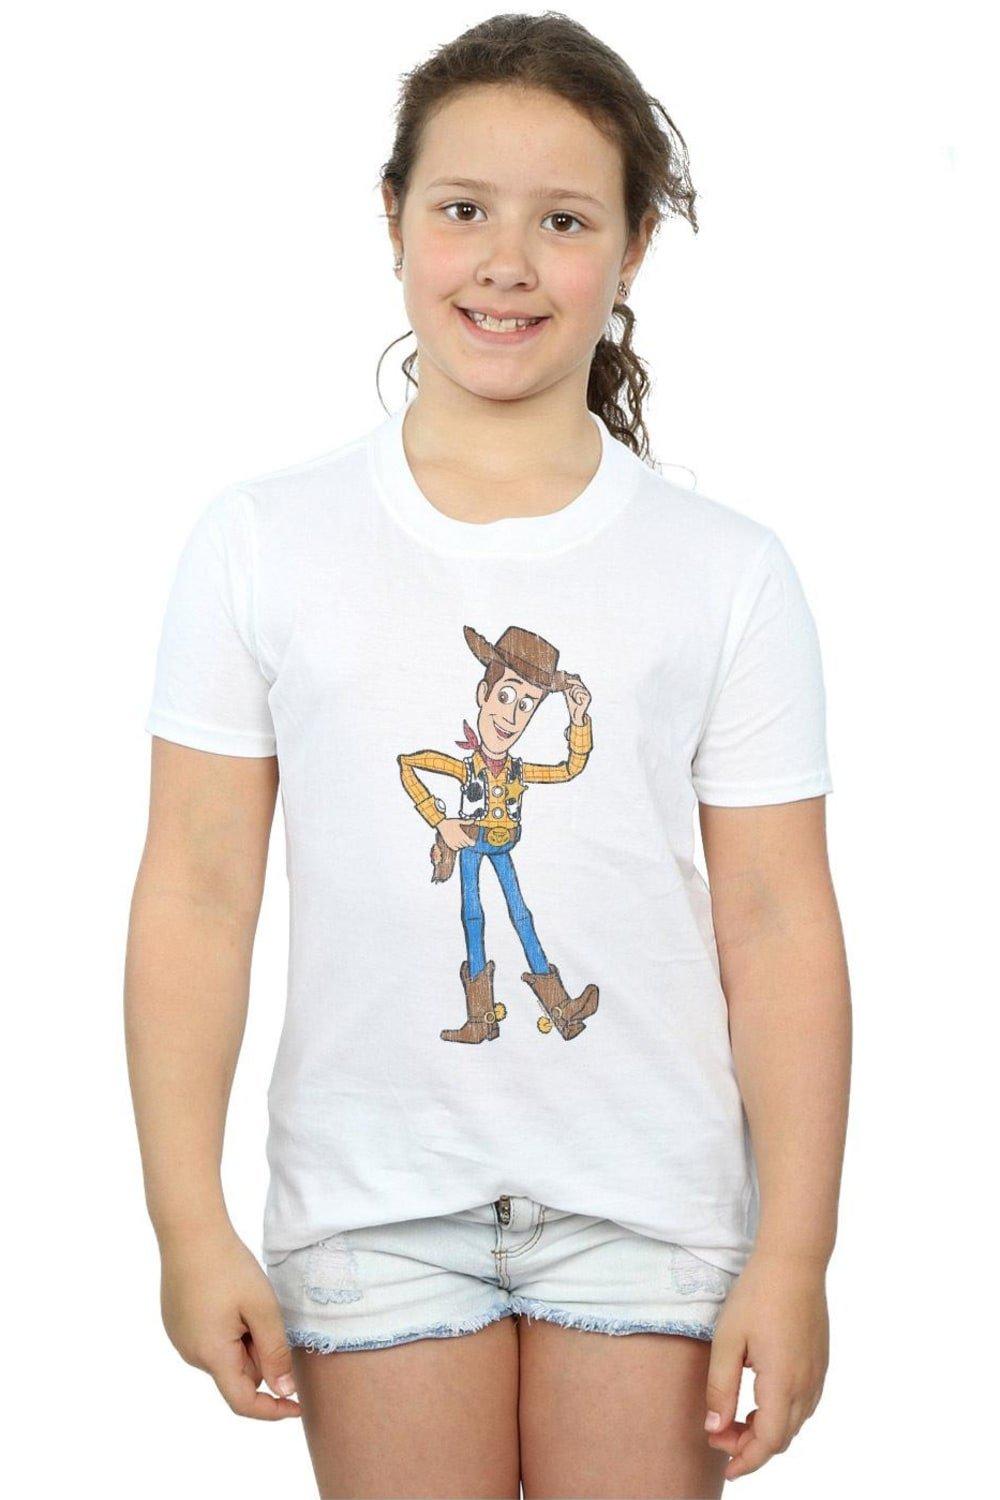 Хлопковая футболка «История игрушек 4: Шериф Вуди» Disney, белый пазлы для малышей история игрушек шериф вуди и мистер картофель детская логика